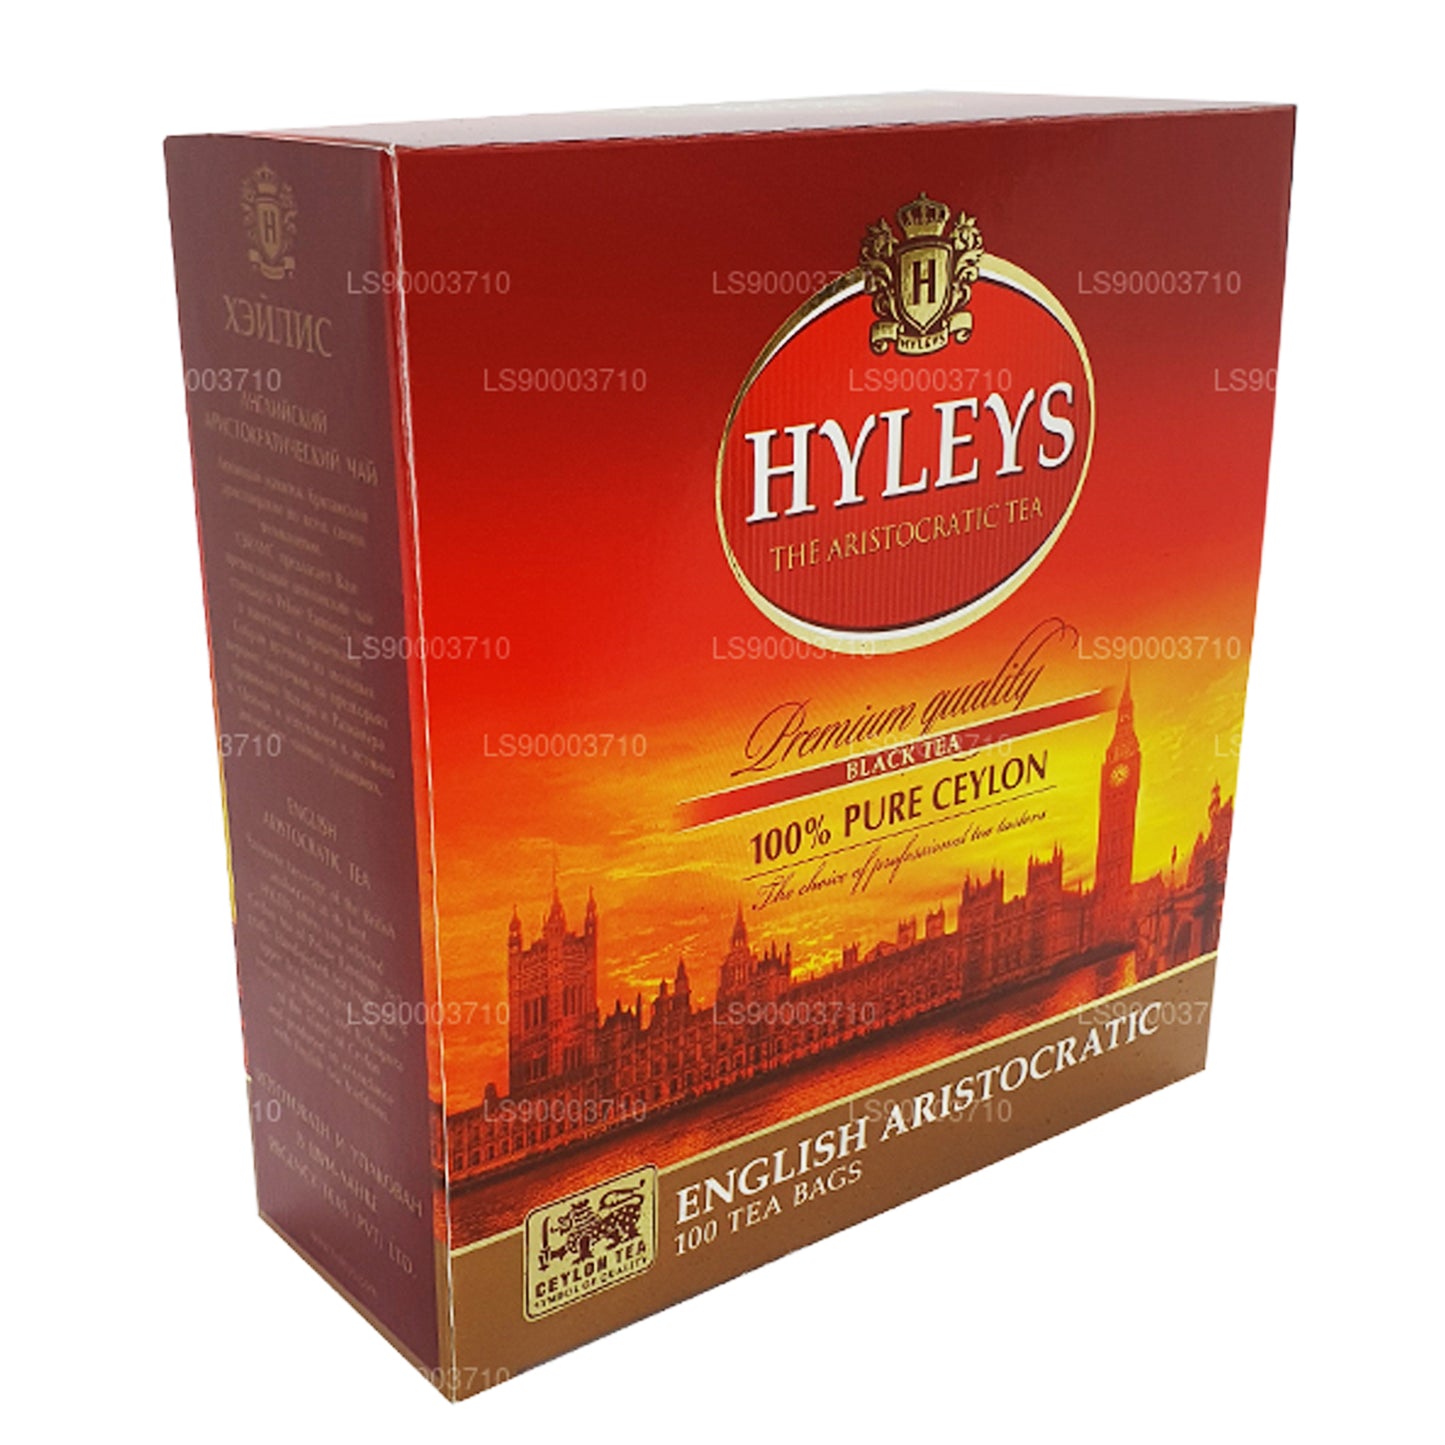 HYLEYS 优质红茶 100 Tea Bages (200 g)